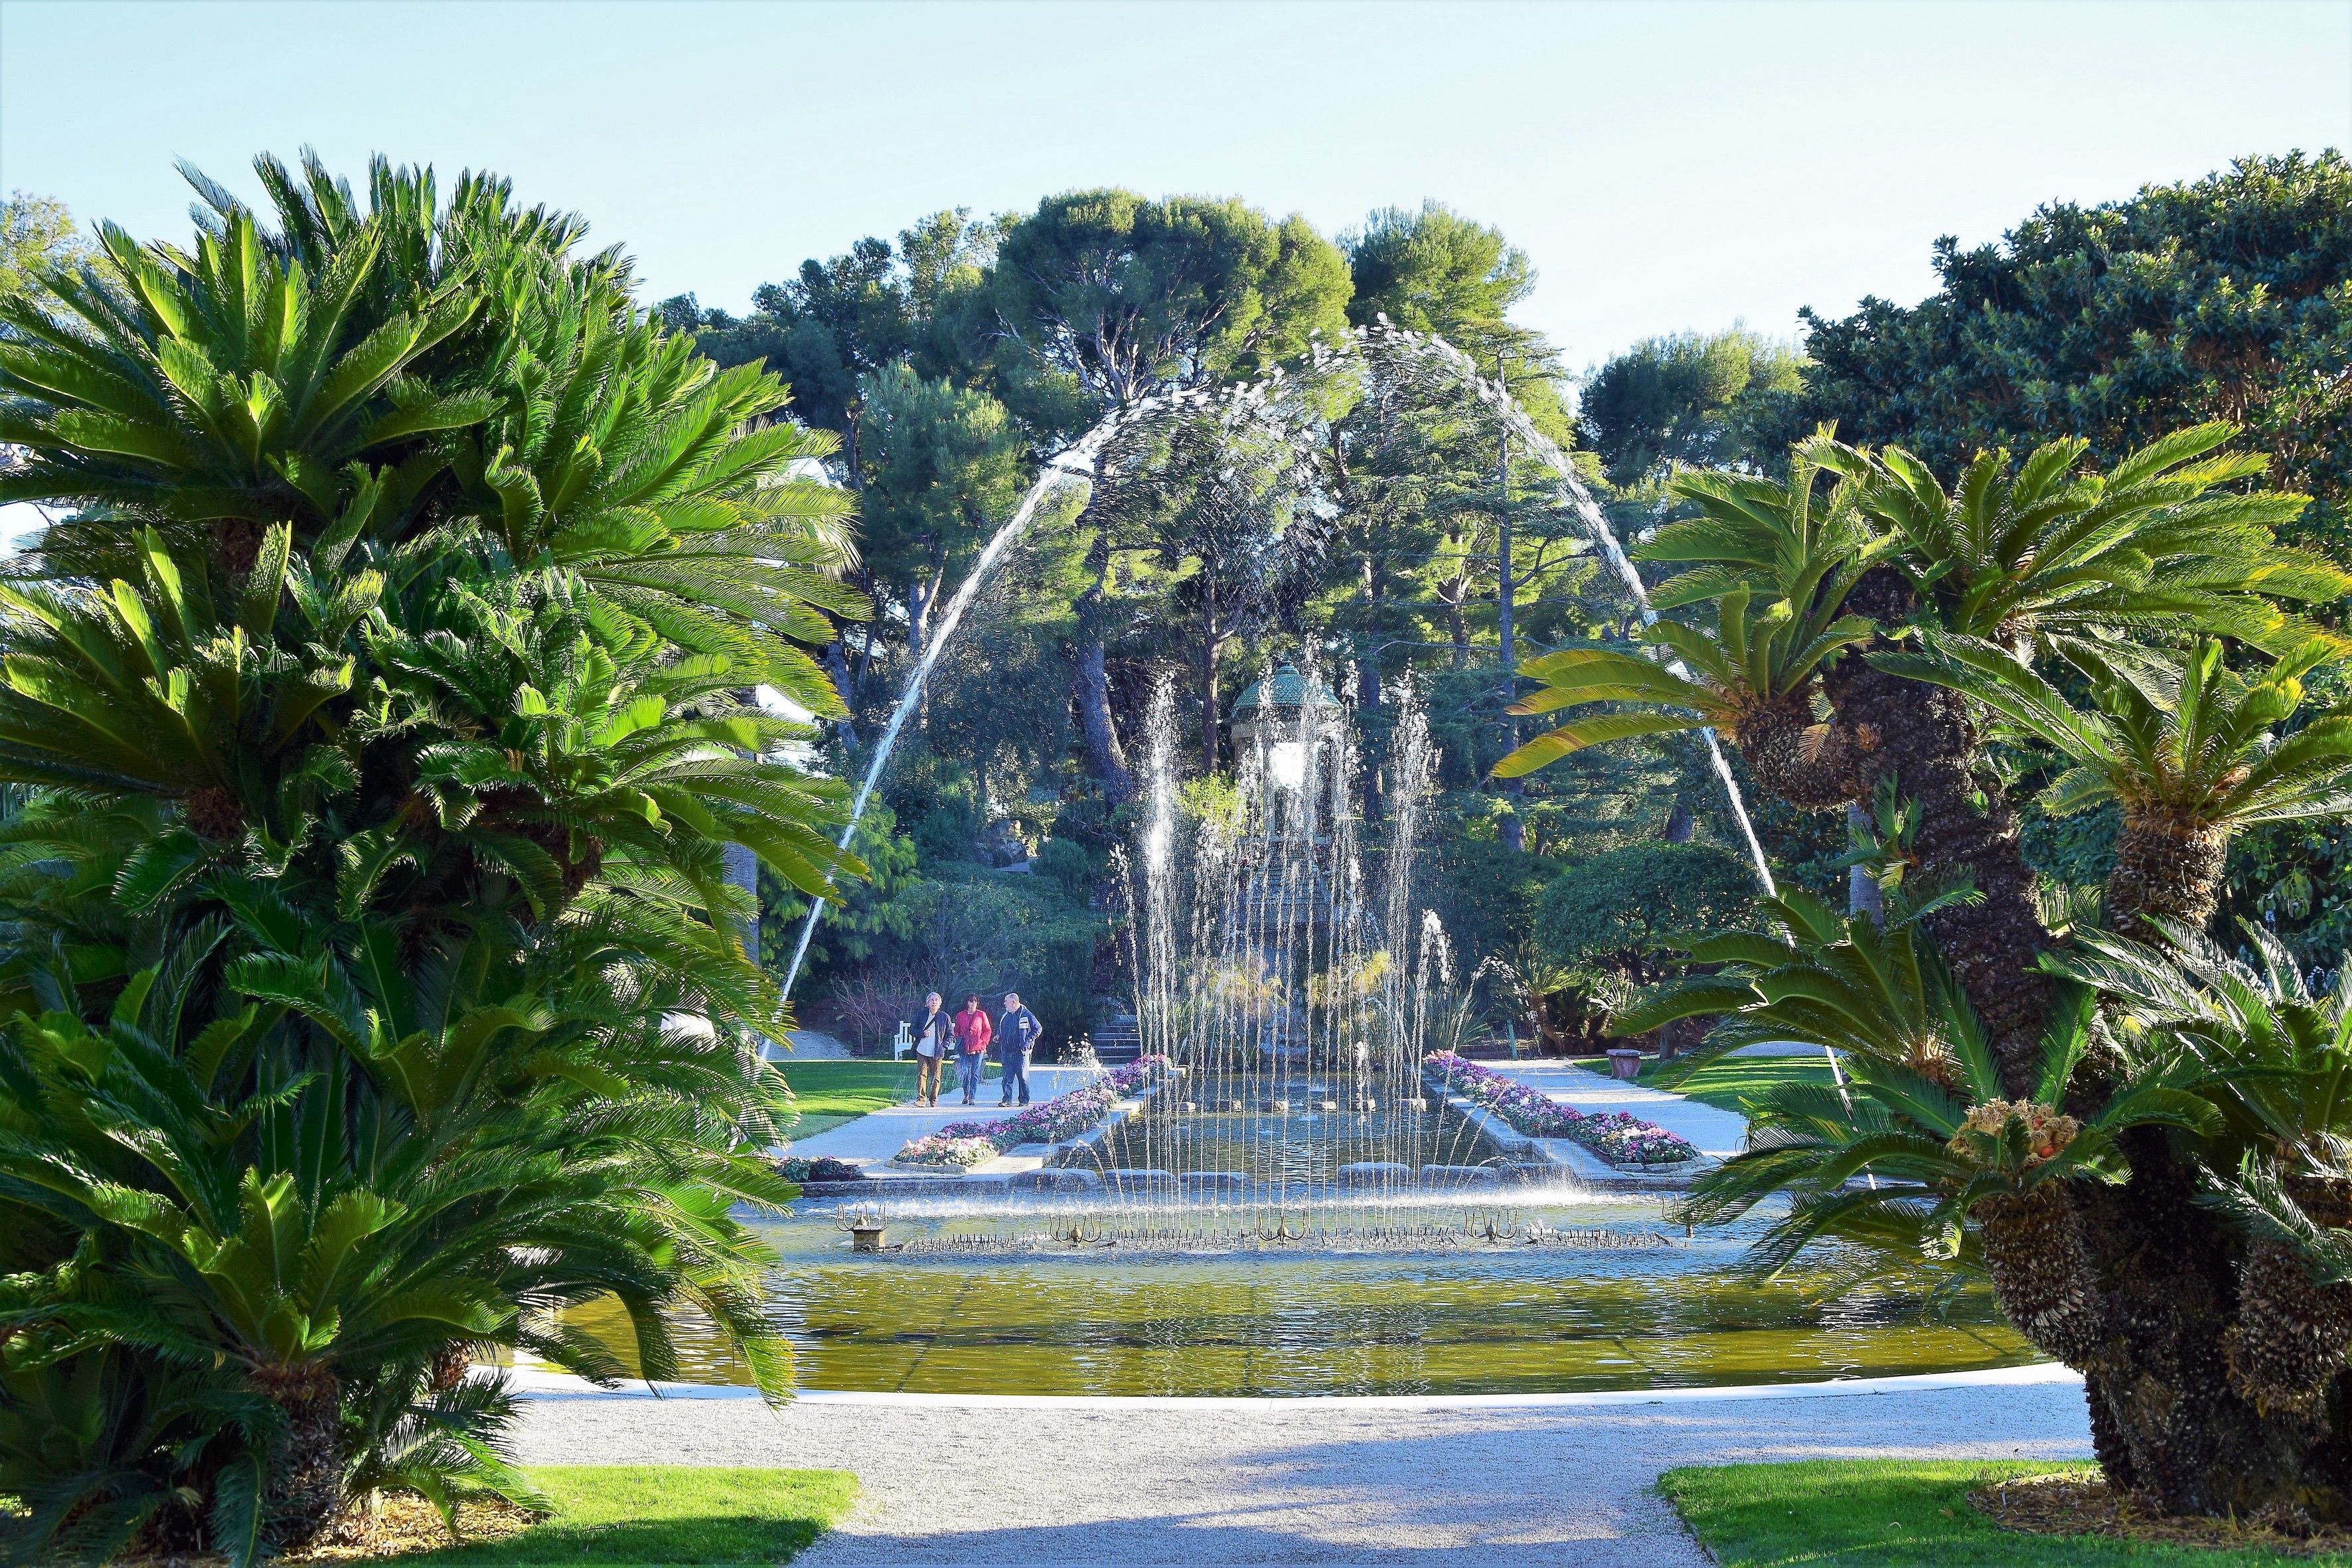 Jets d'eau dans les jardins de la villa Rothschild